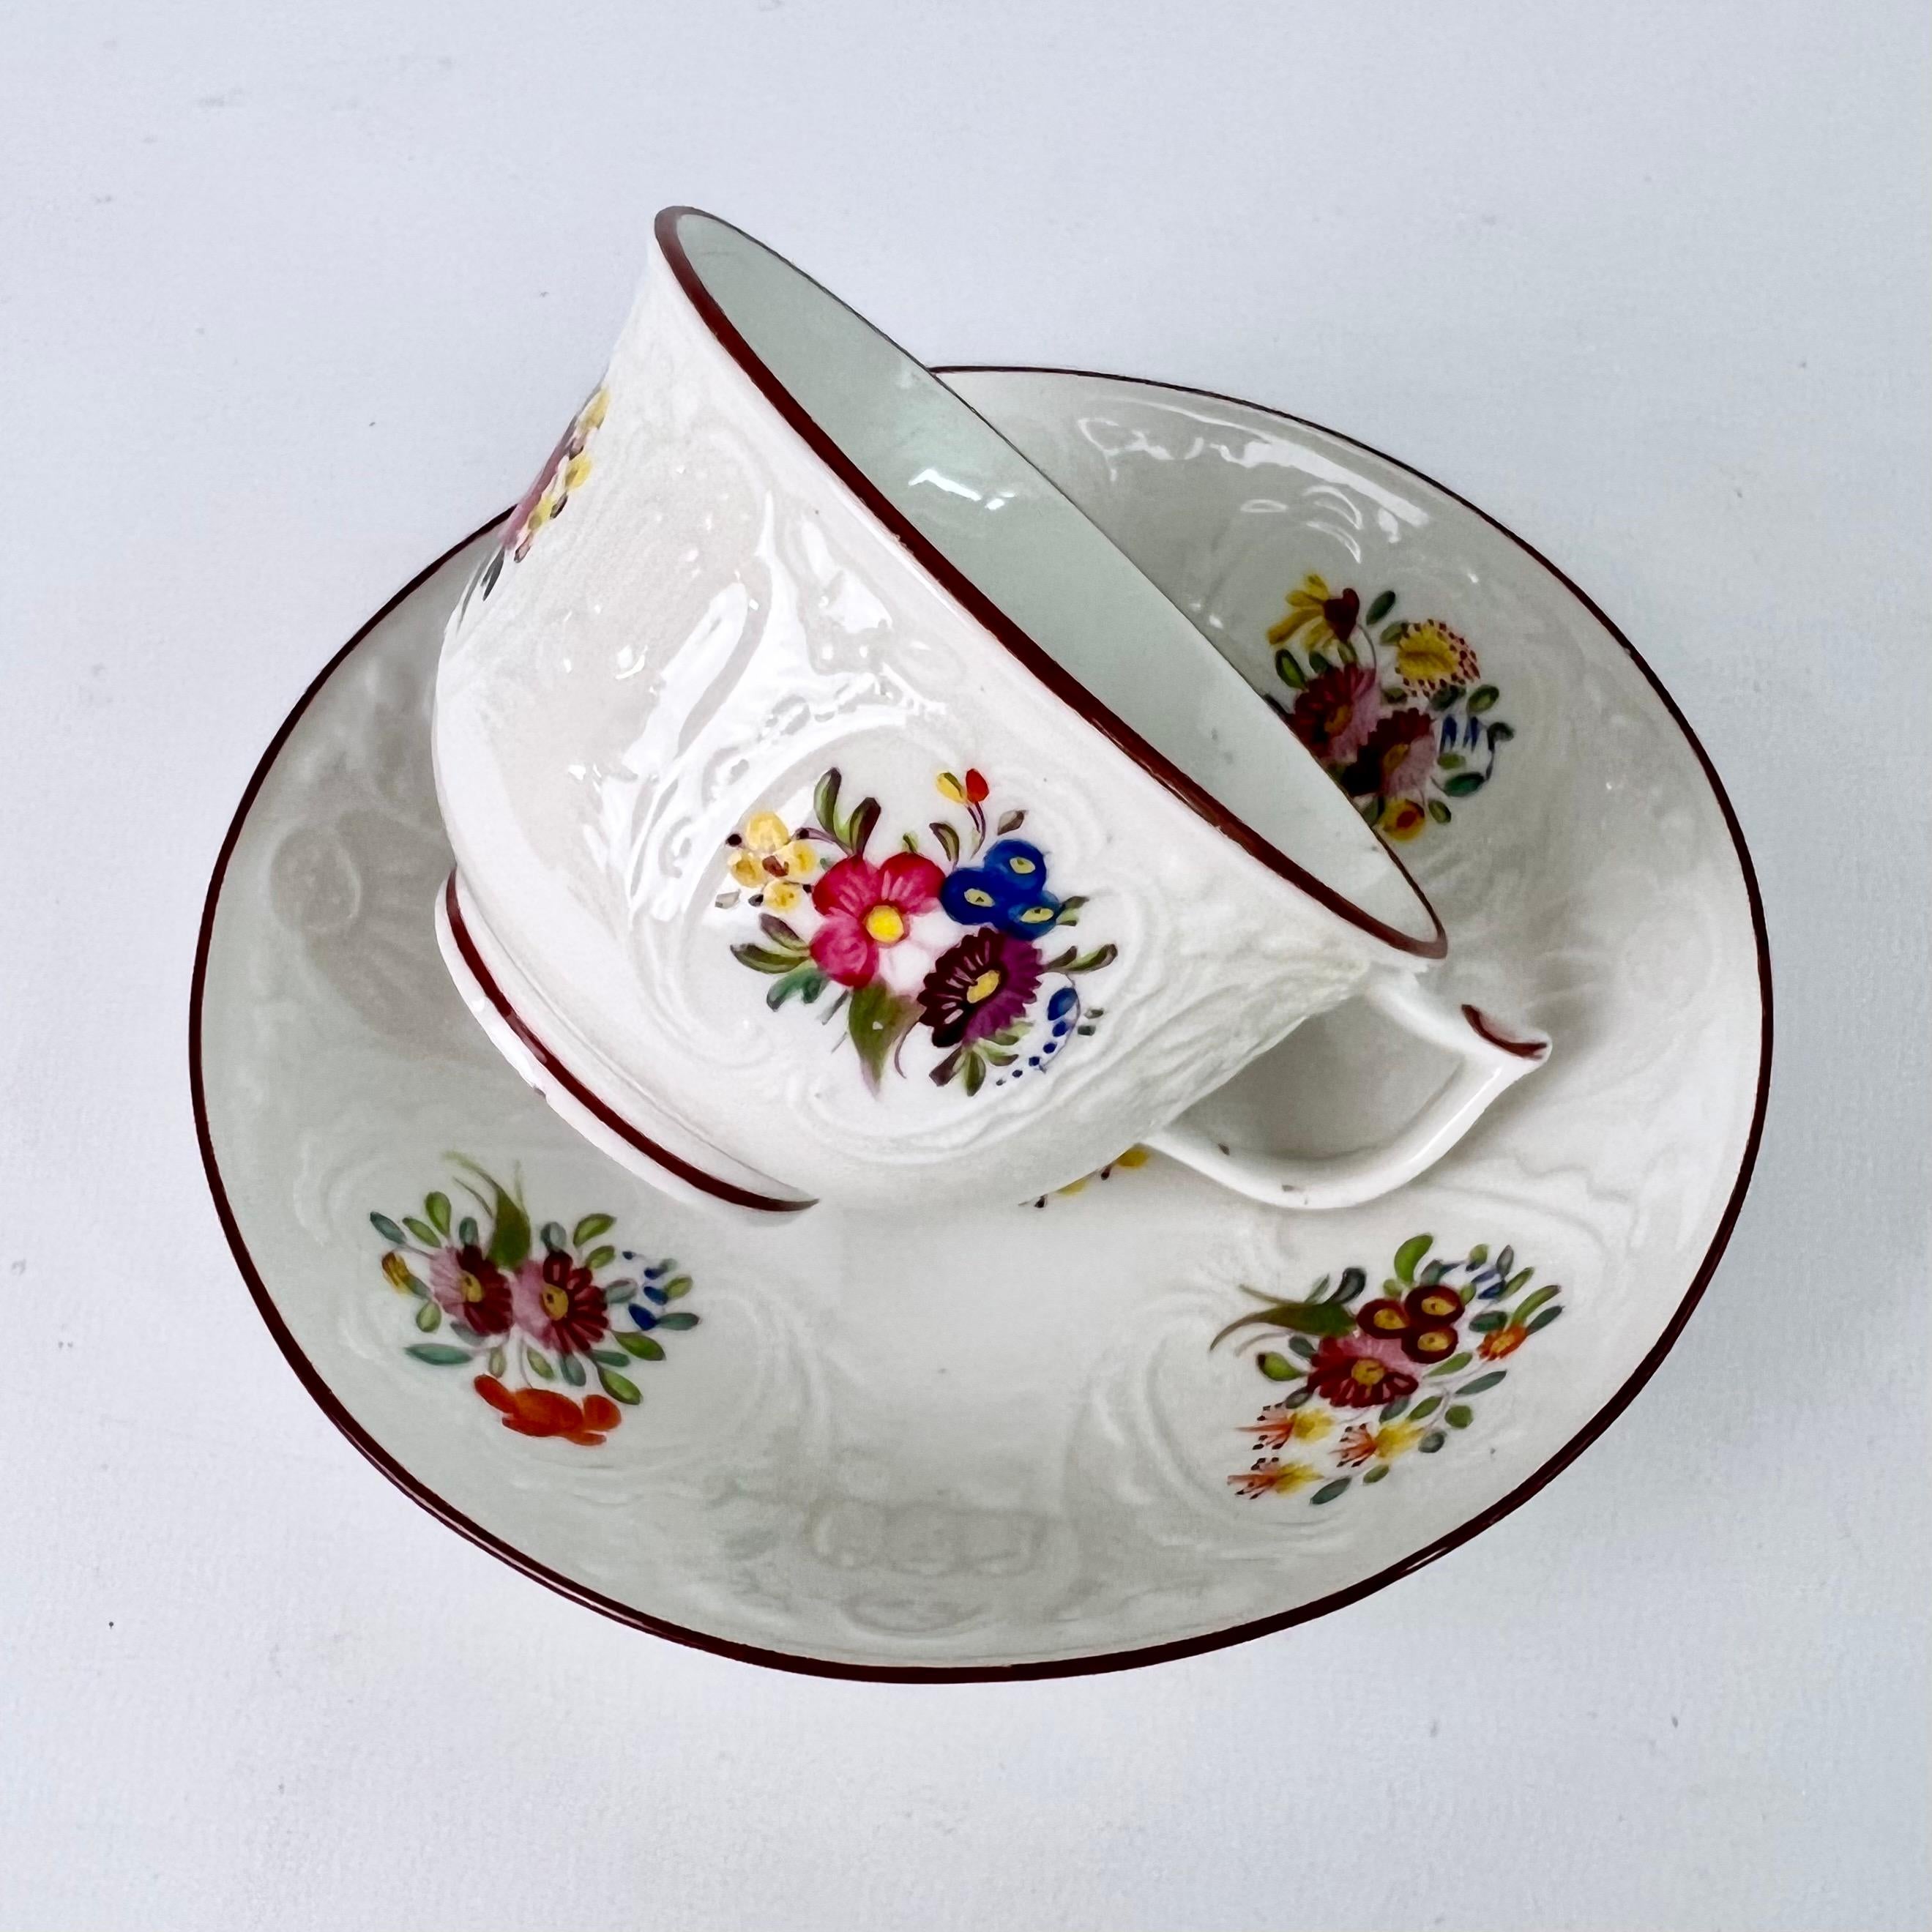 Il s'agit d'une belle tasse à thé et d'une soucoupe fabriquées par Coalport vers 1817. La tasse à thé est moulée à l'aveugle dans le motif 